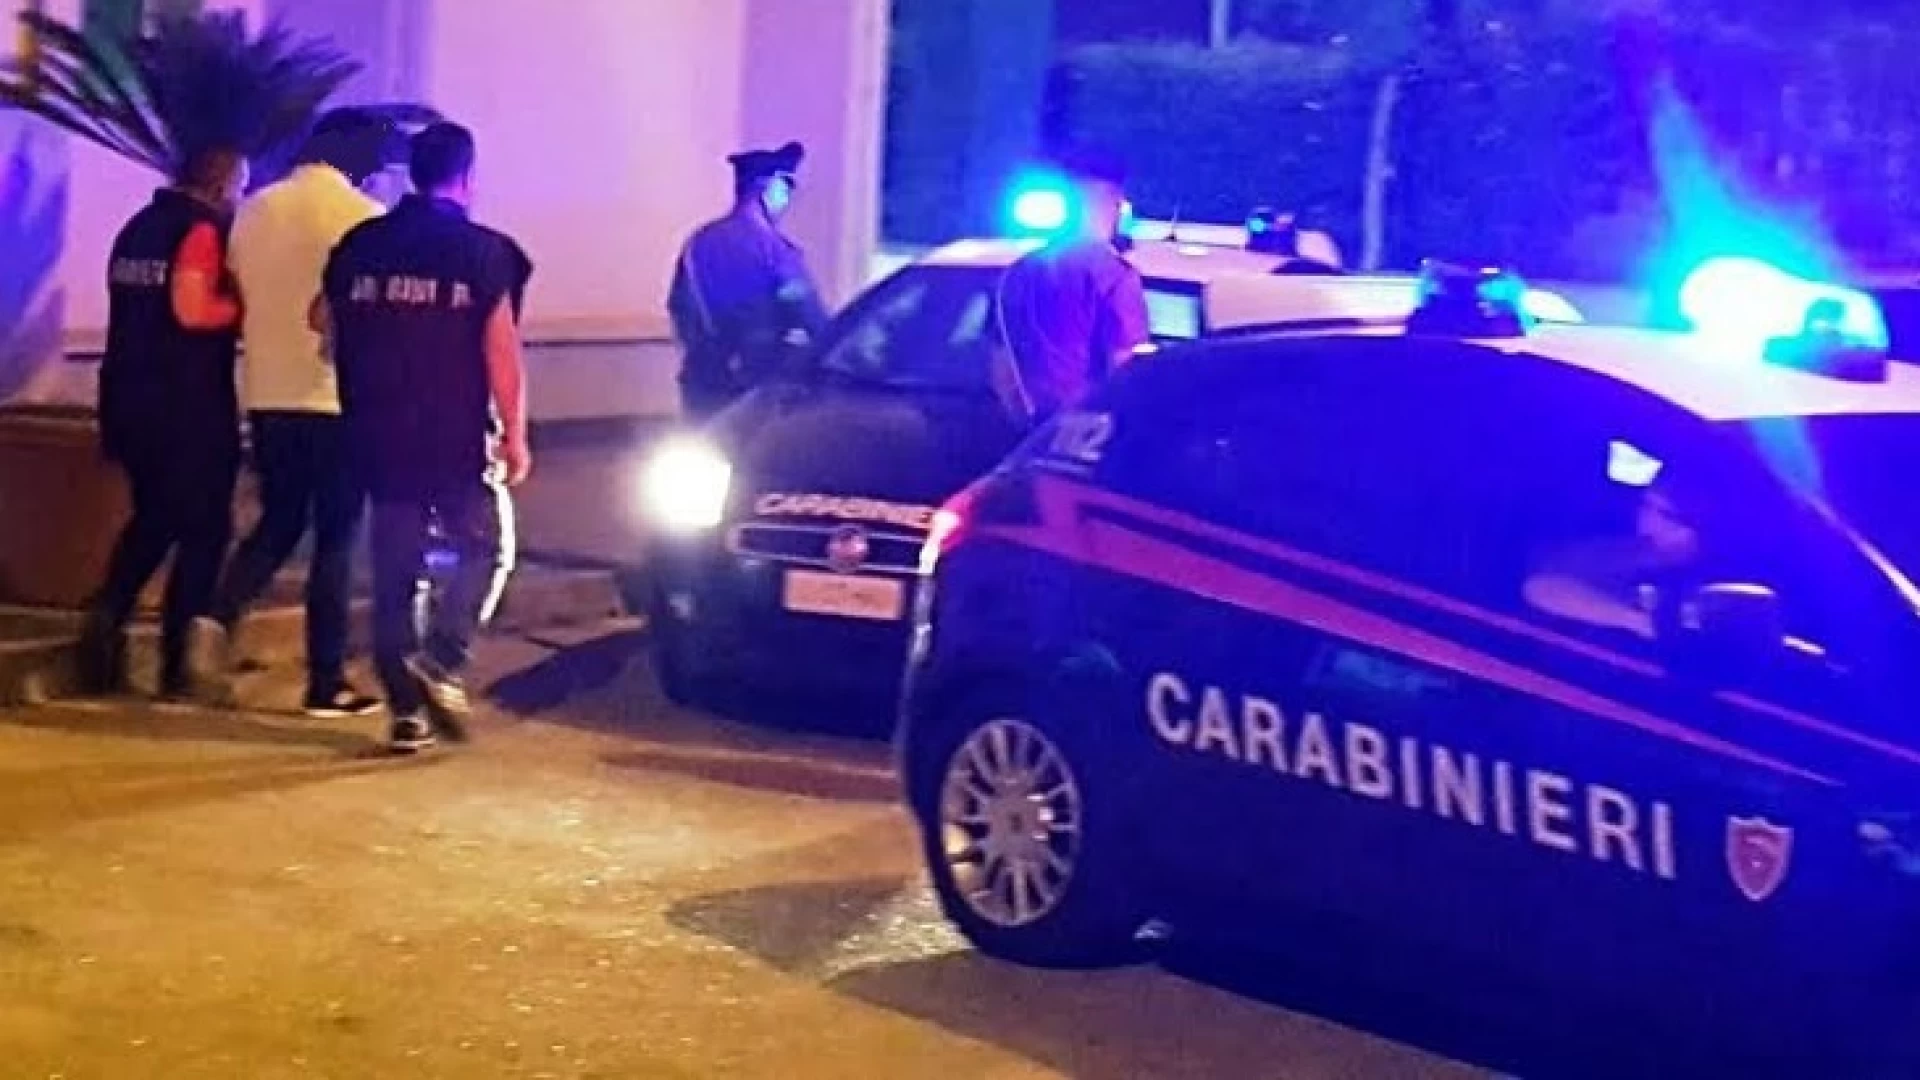 Pozzilli: incredibile, coppia di ladri chiama i Carabinieri per essere arrestata. Avevano perpetrato un furto all’interno di una officina di demolizioni auto.